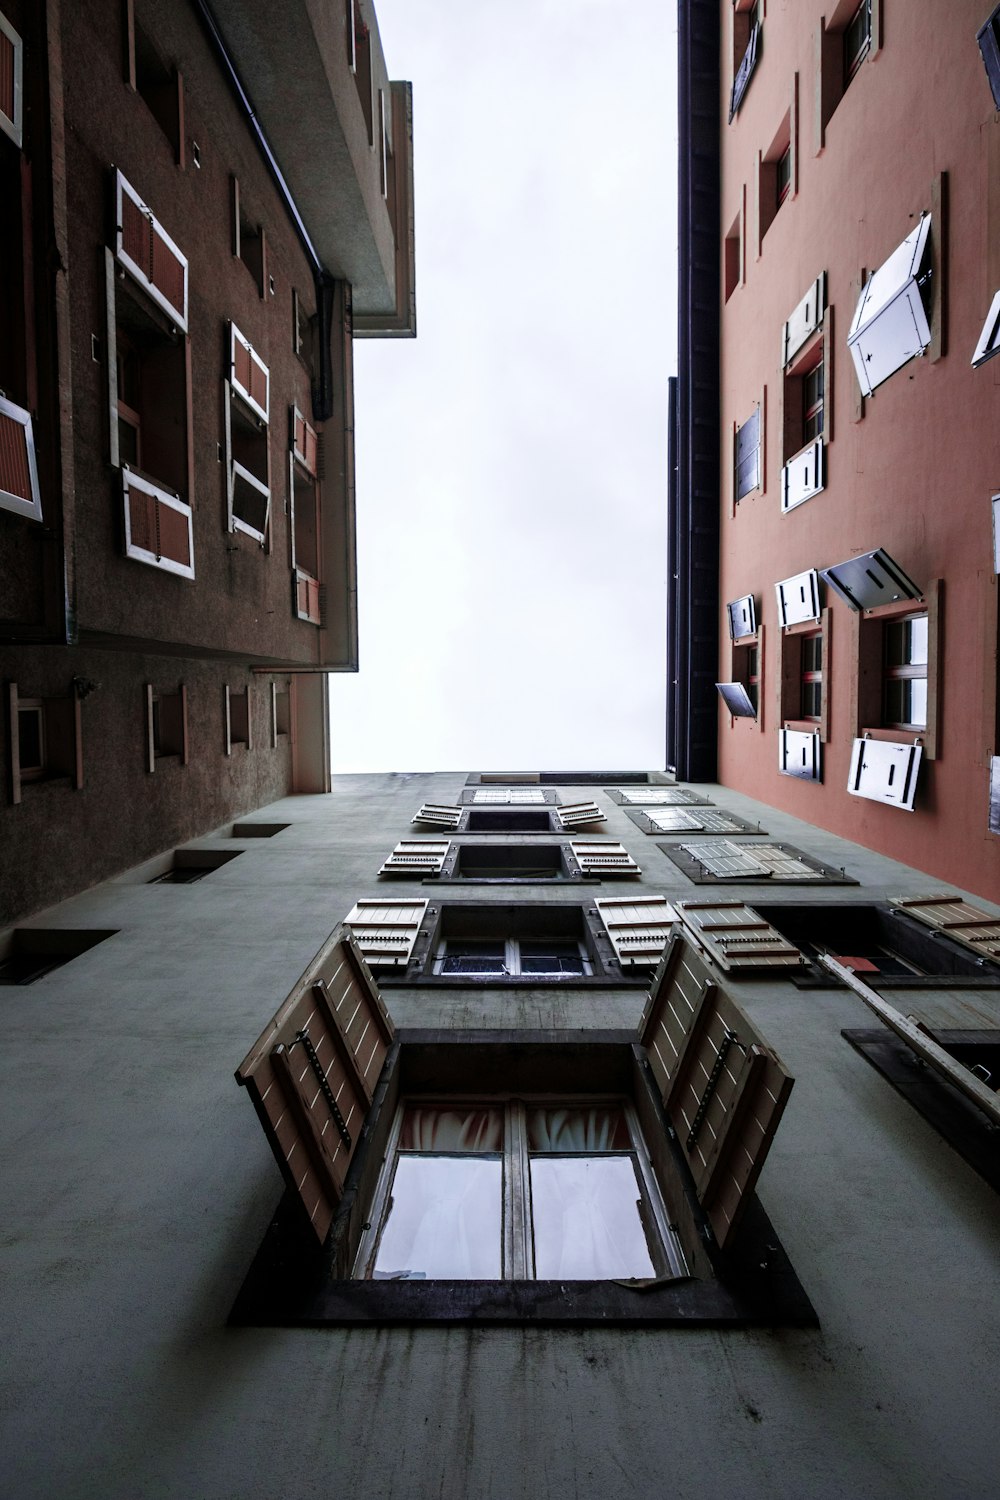 fotografia ad angolo basso dell'edificio con le finestre aperte durante il giorno